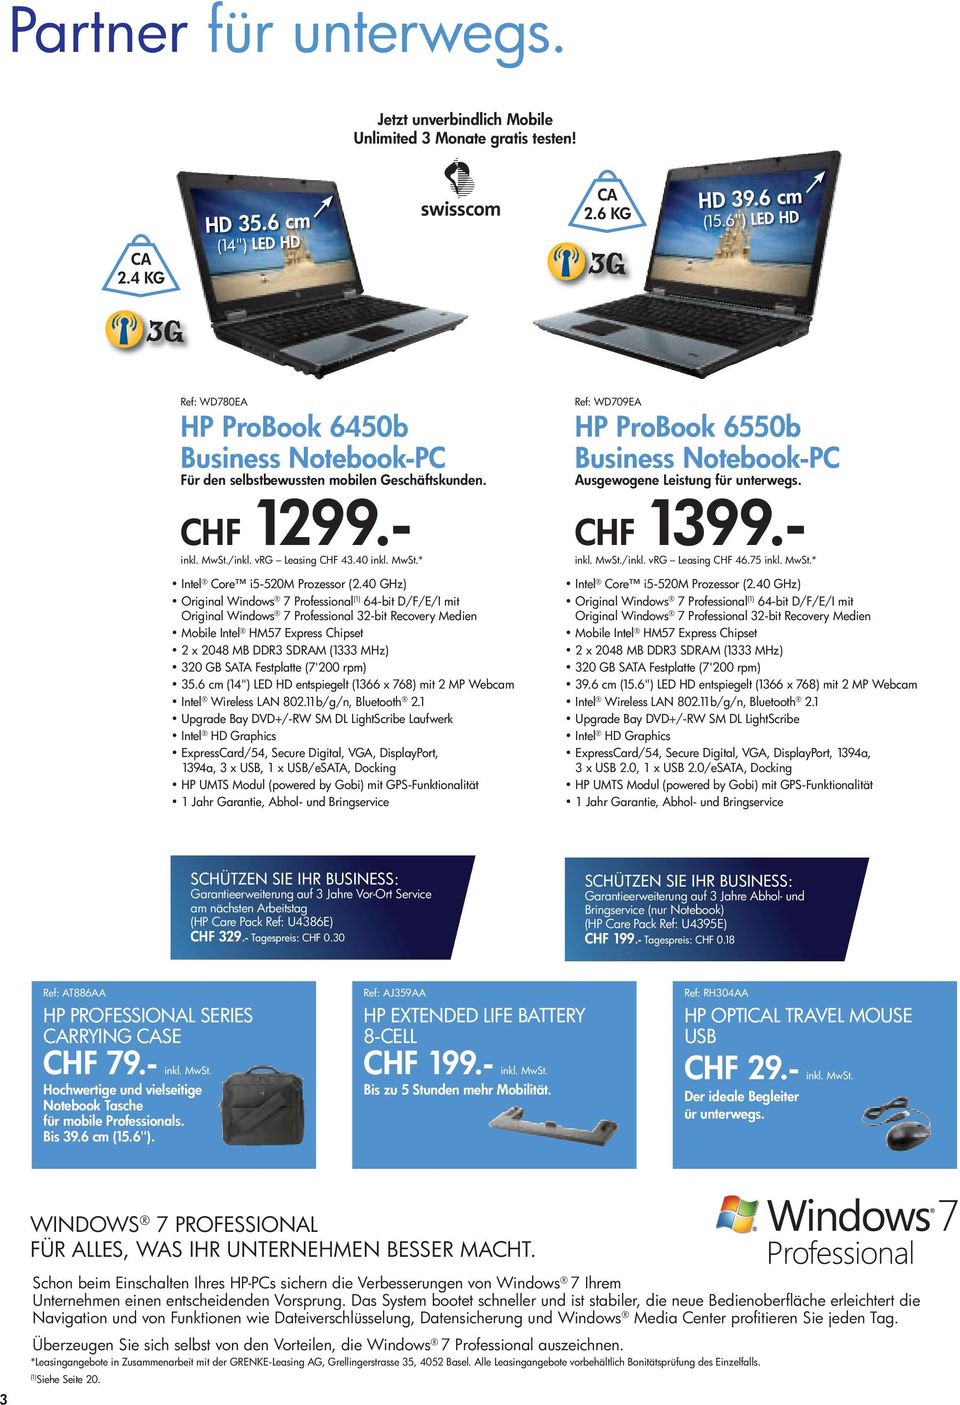 1 HP ProBook 6550b Business Notebook-PC Ausgewogene Leistung für unterwegs. CHF 1399.- 7 Professional 2.